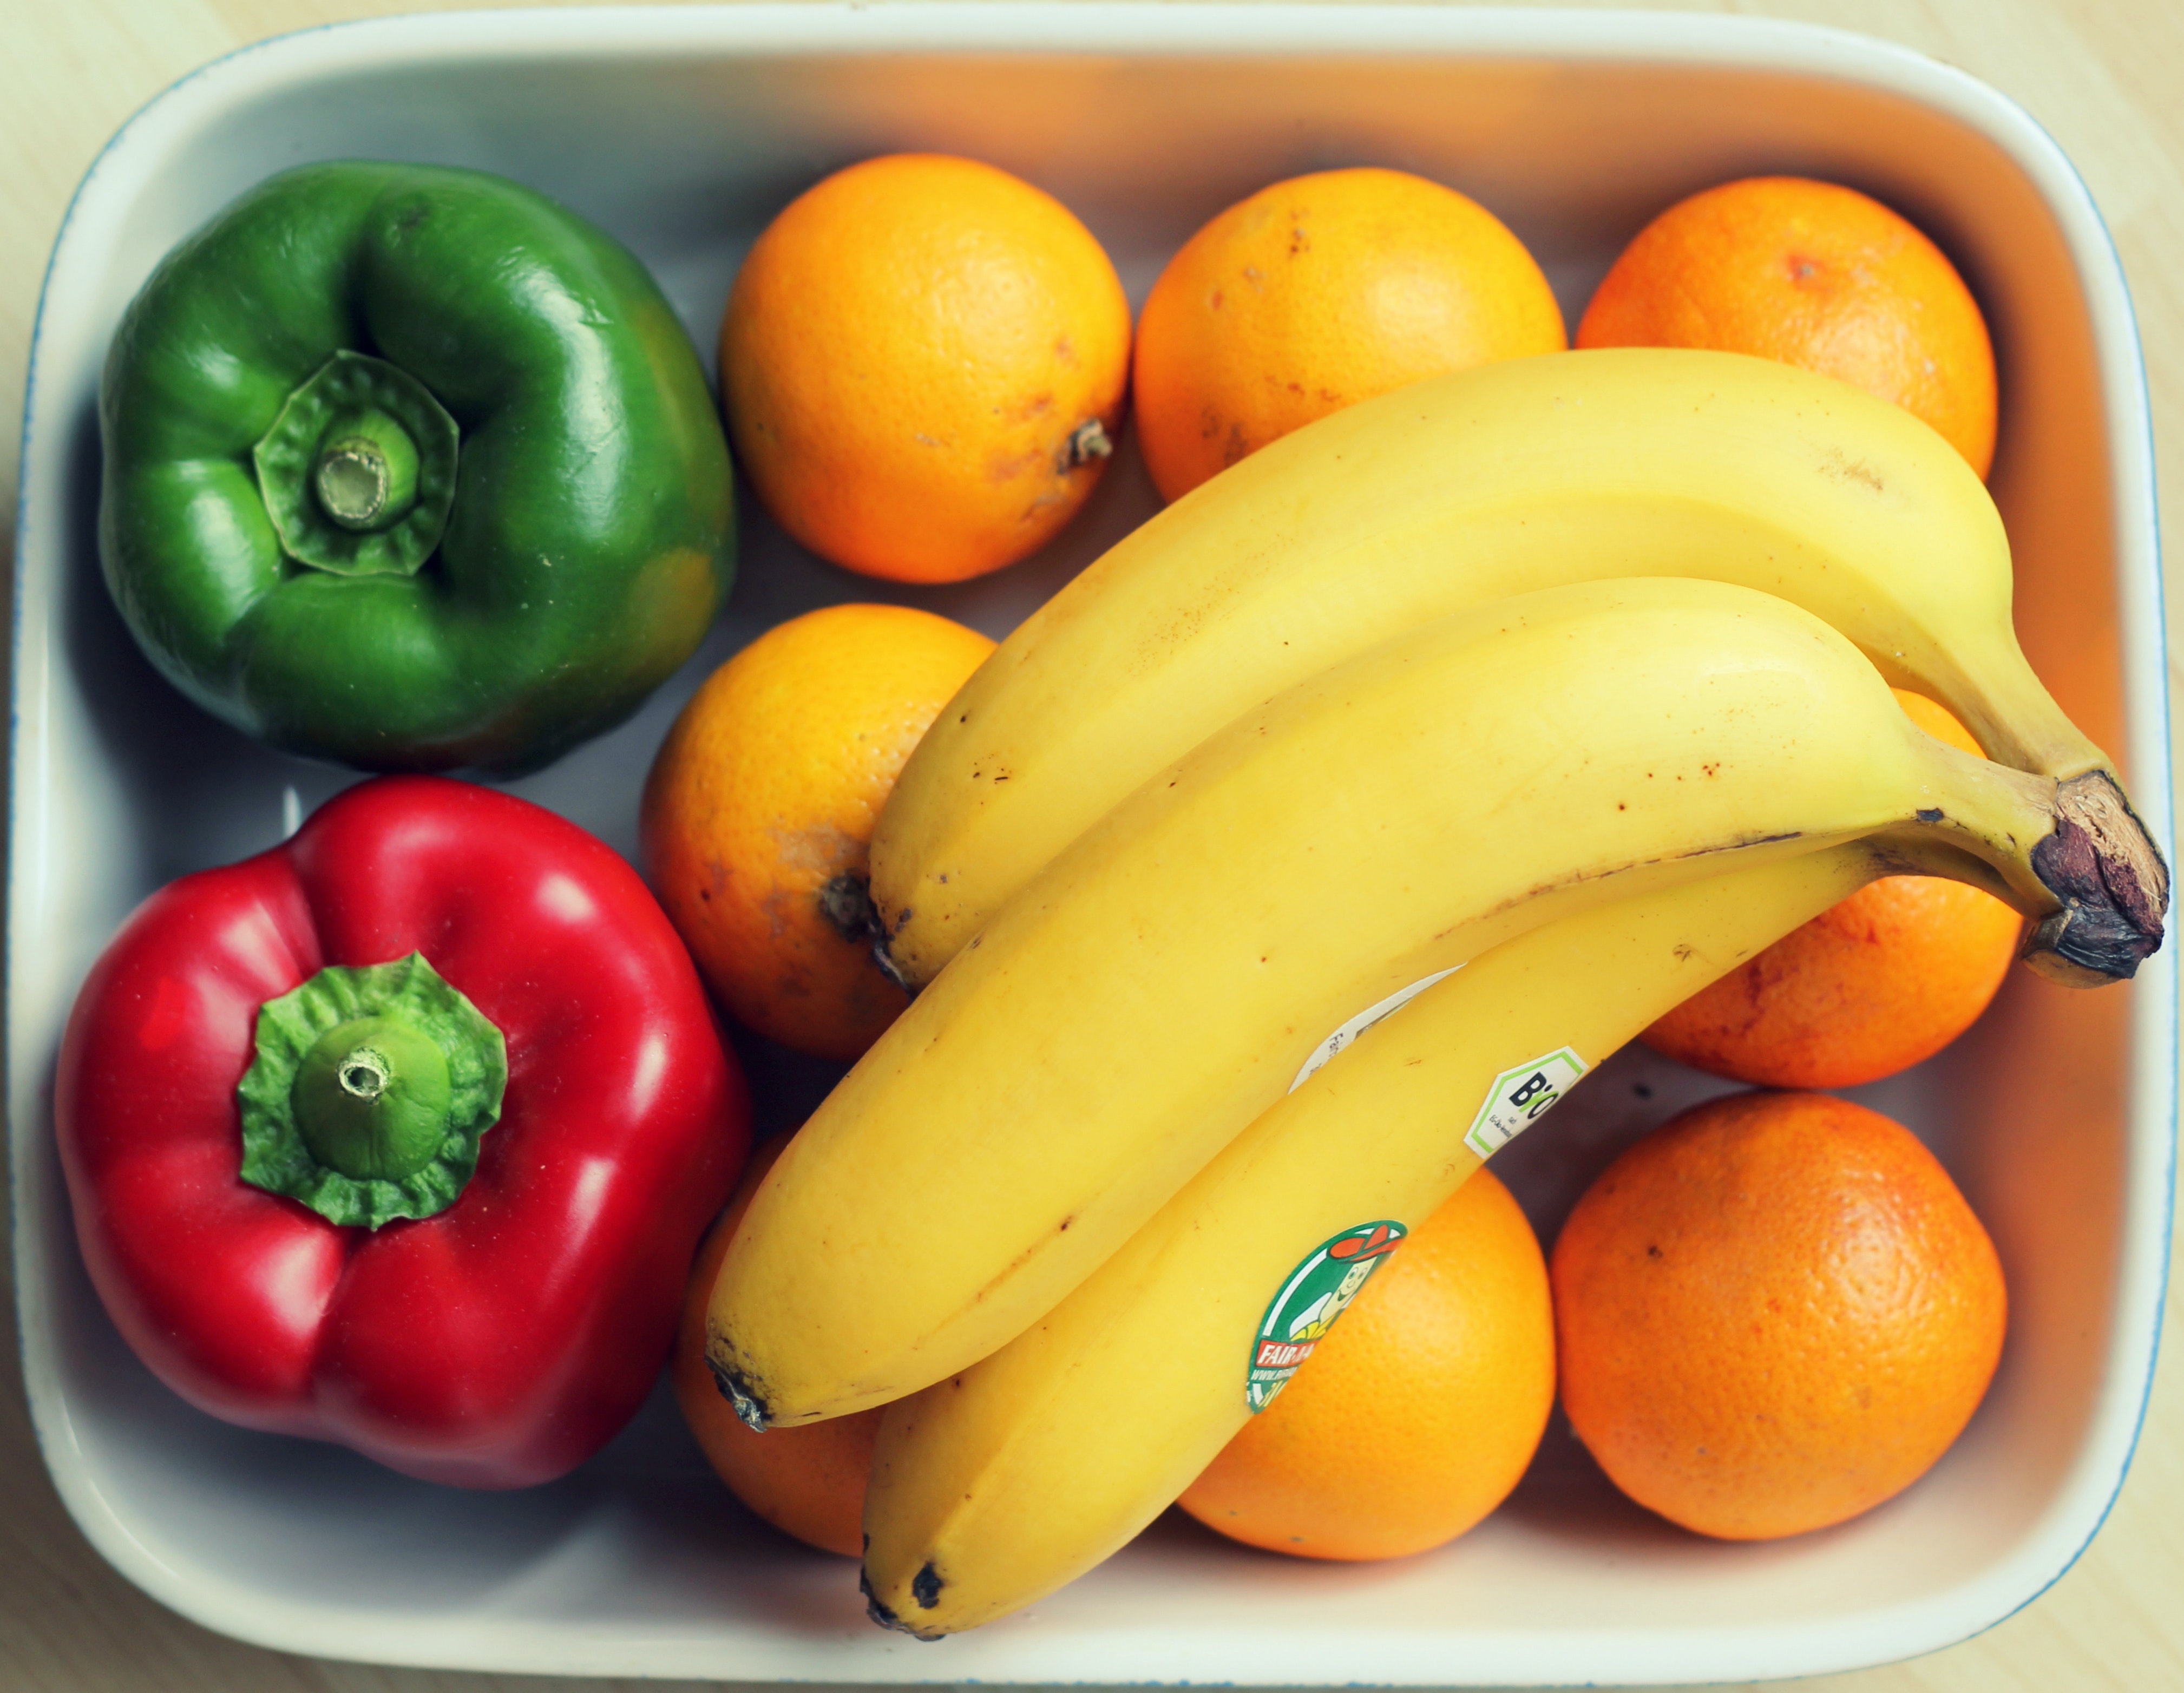 fruits-orange-banana-57556.jpg